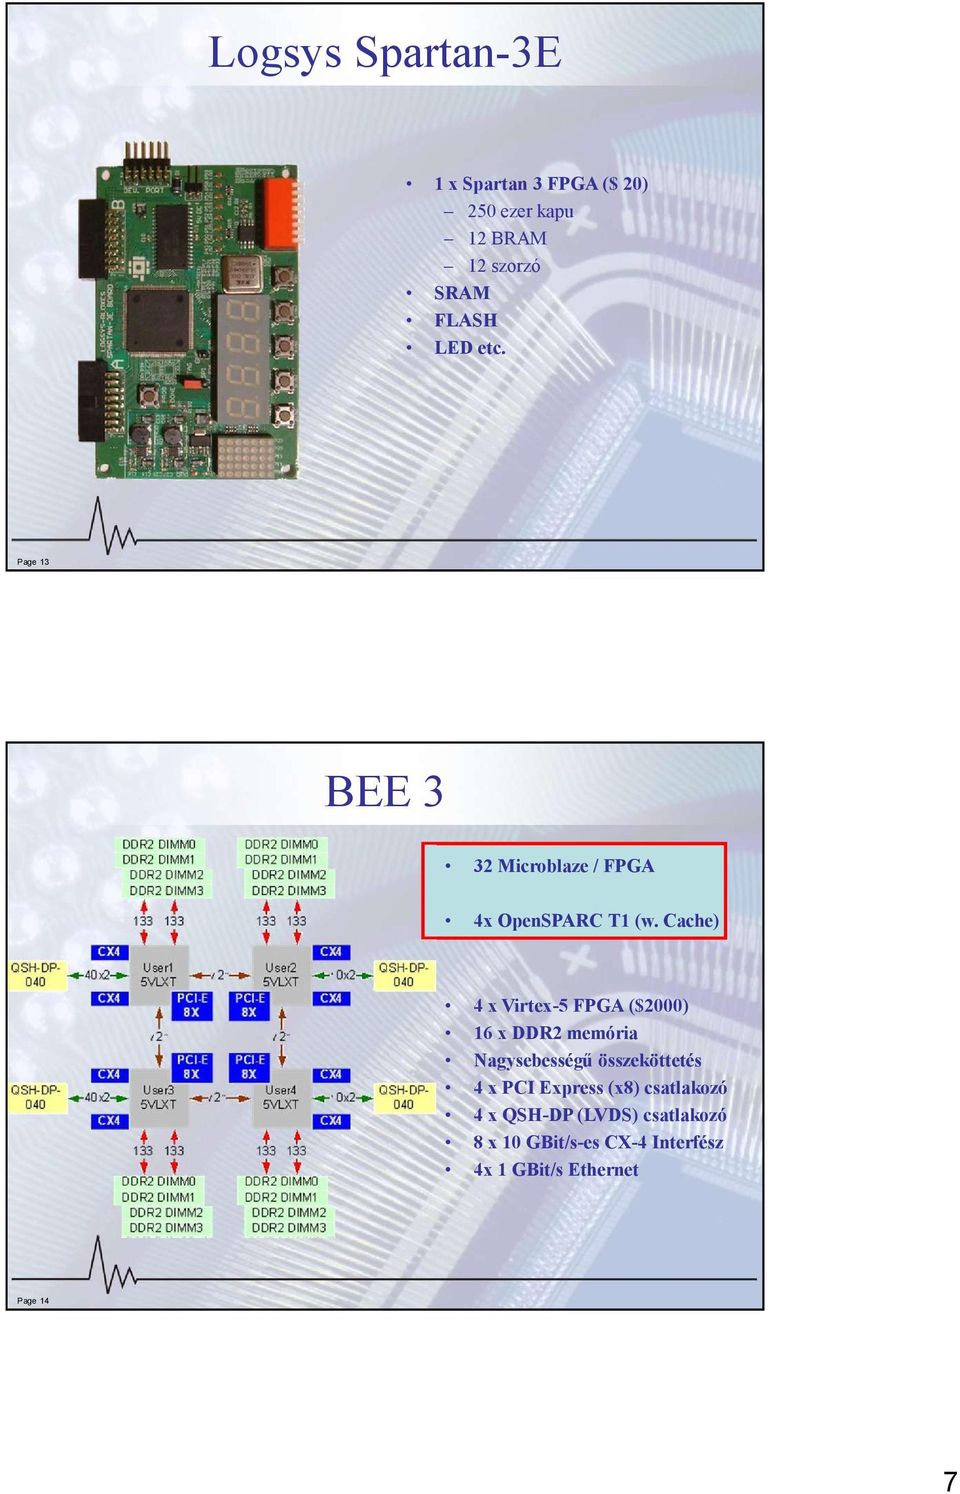 Cache) 4 x Virtex-5 FPGA ($2000) 16 x DDR2 memória Nagysebességű összeköttetés 4 x PCI